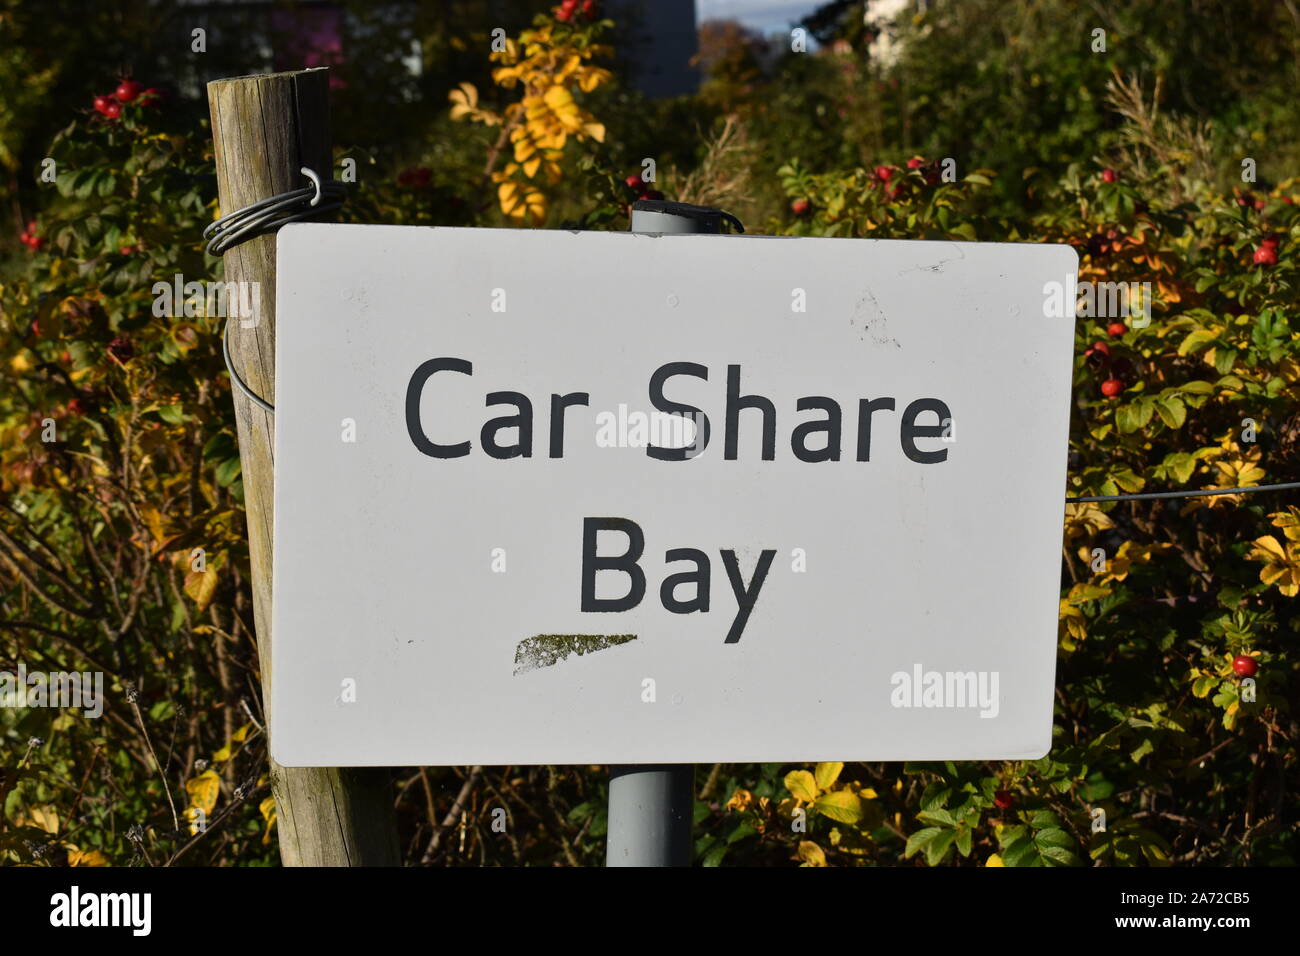 Car Share Bay signe. Un espace de stationnement réservé pour les conducteurs qui prennent part à un système de partage de voiture, mis en place pour essayer de réduire l'utilisation de la voiture. Banque D'Images